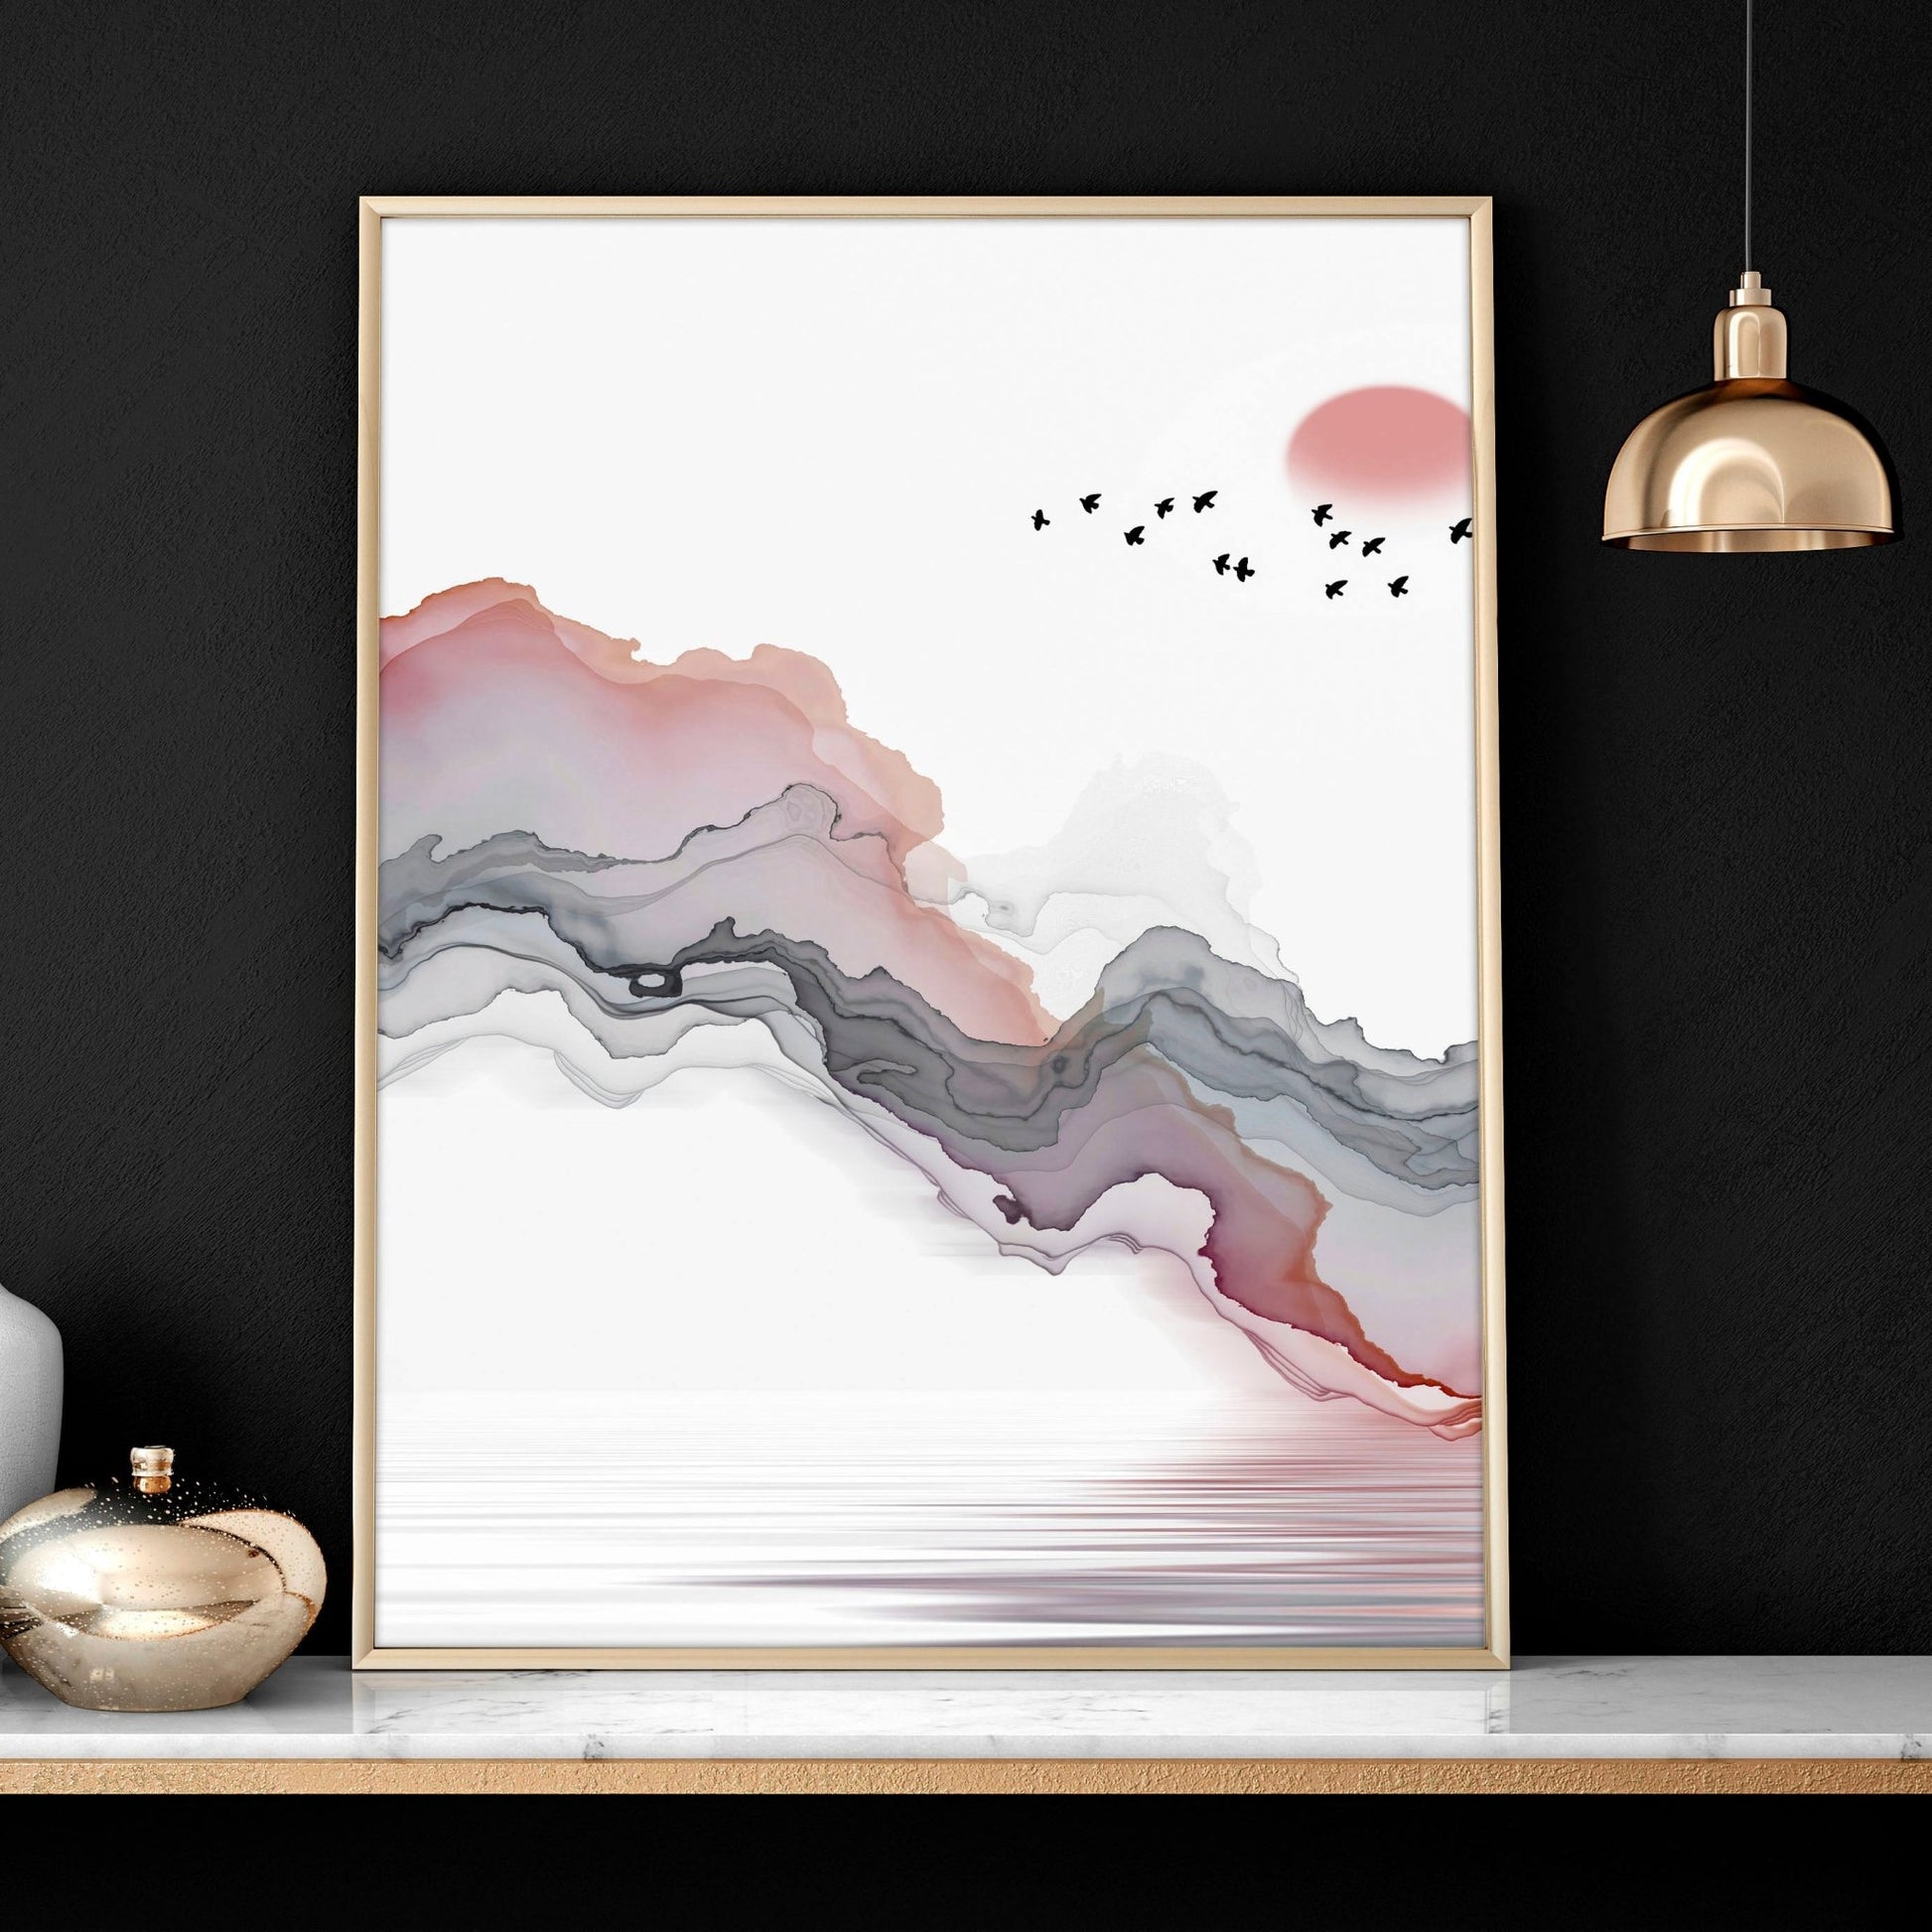 Wall Art Zen inspired | set of 3 wall art prints - About Wall Art